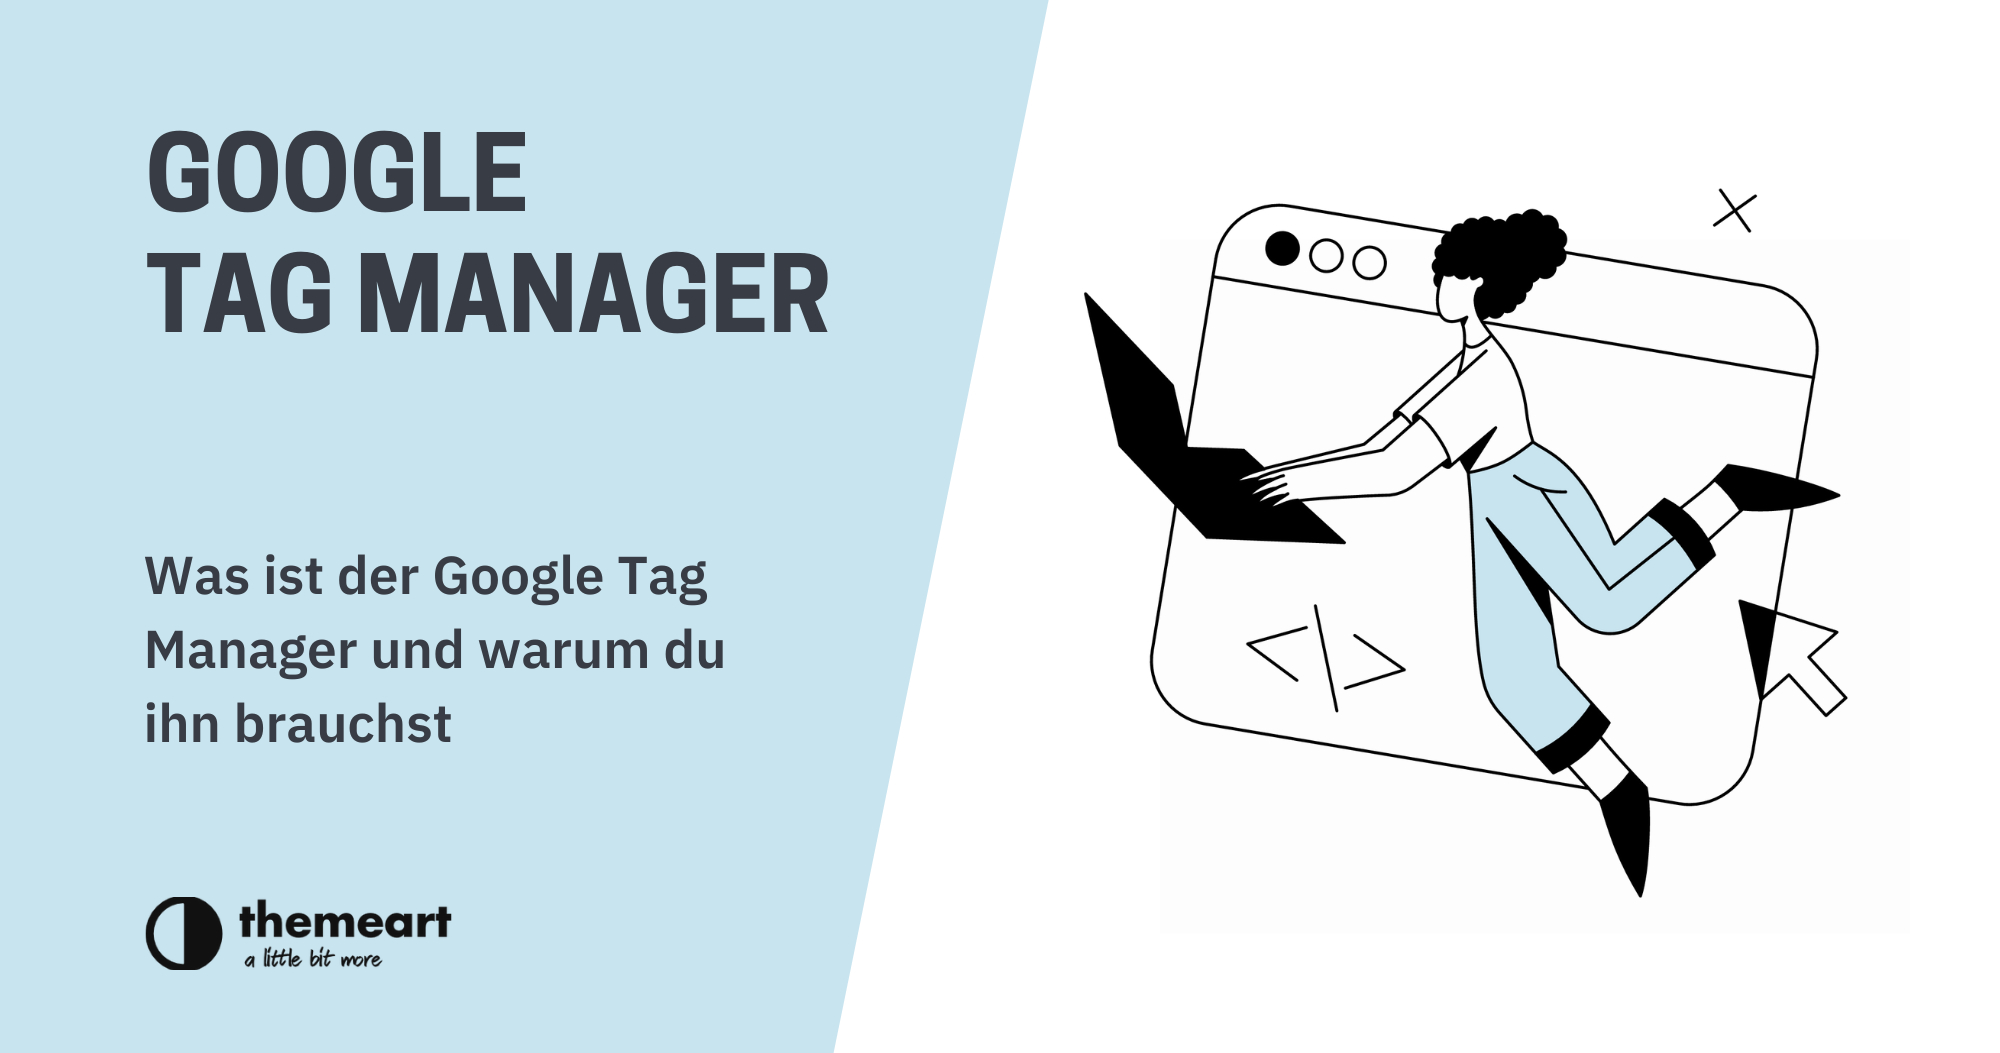 Was ist der Google Tag Manager und warum du ihn brauchst